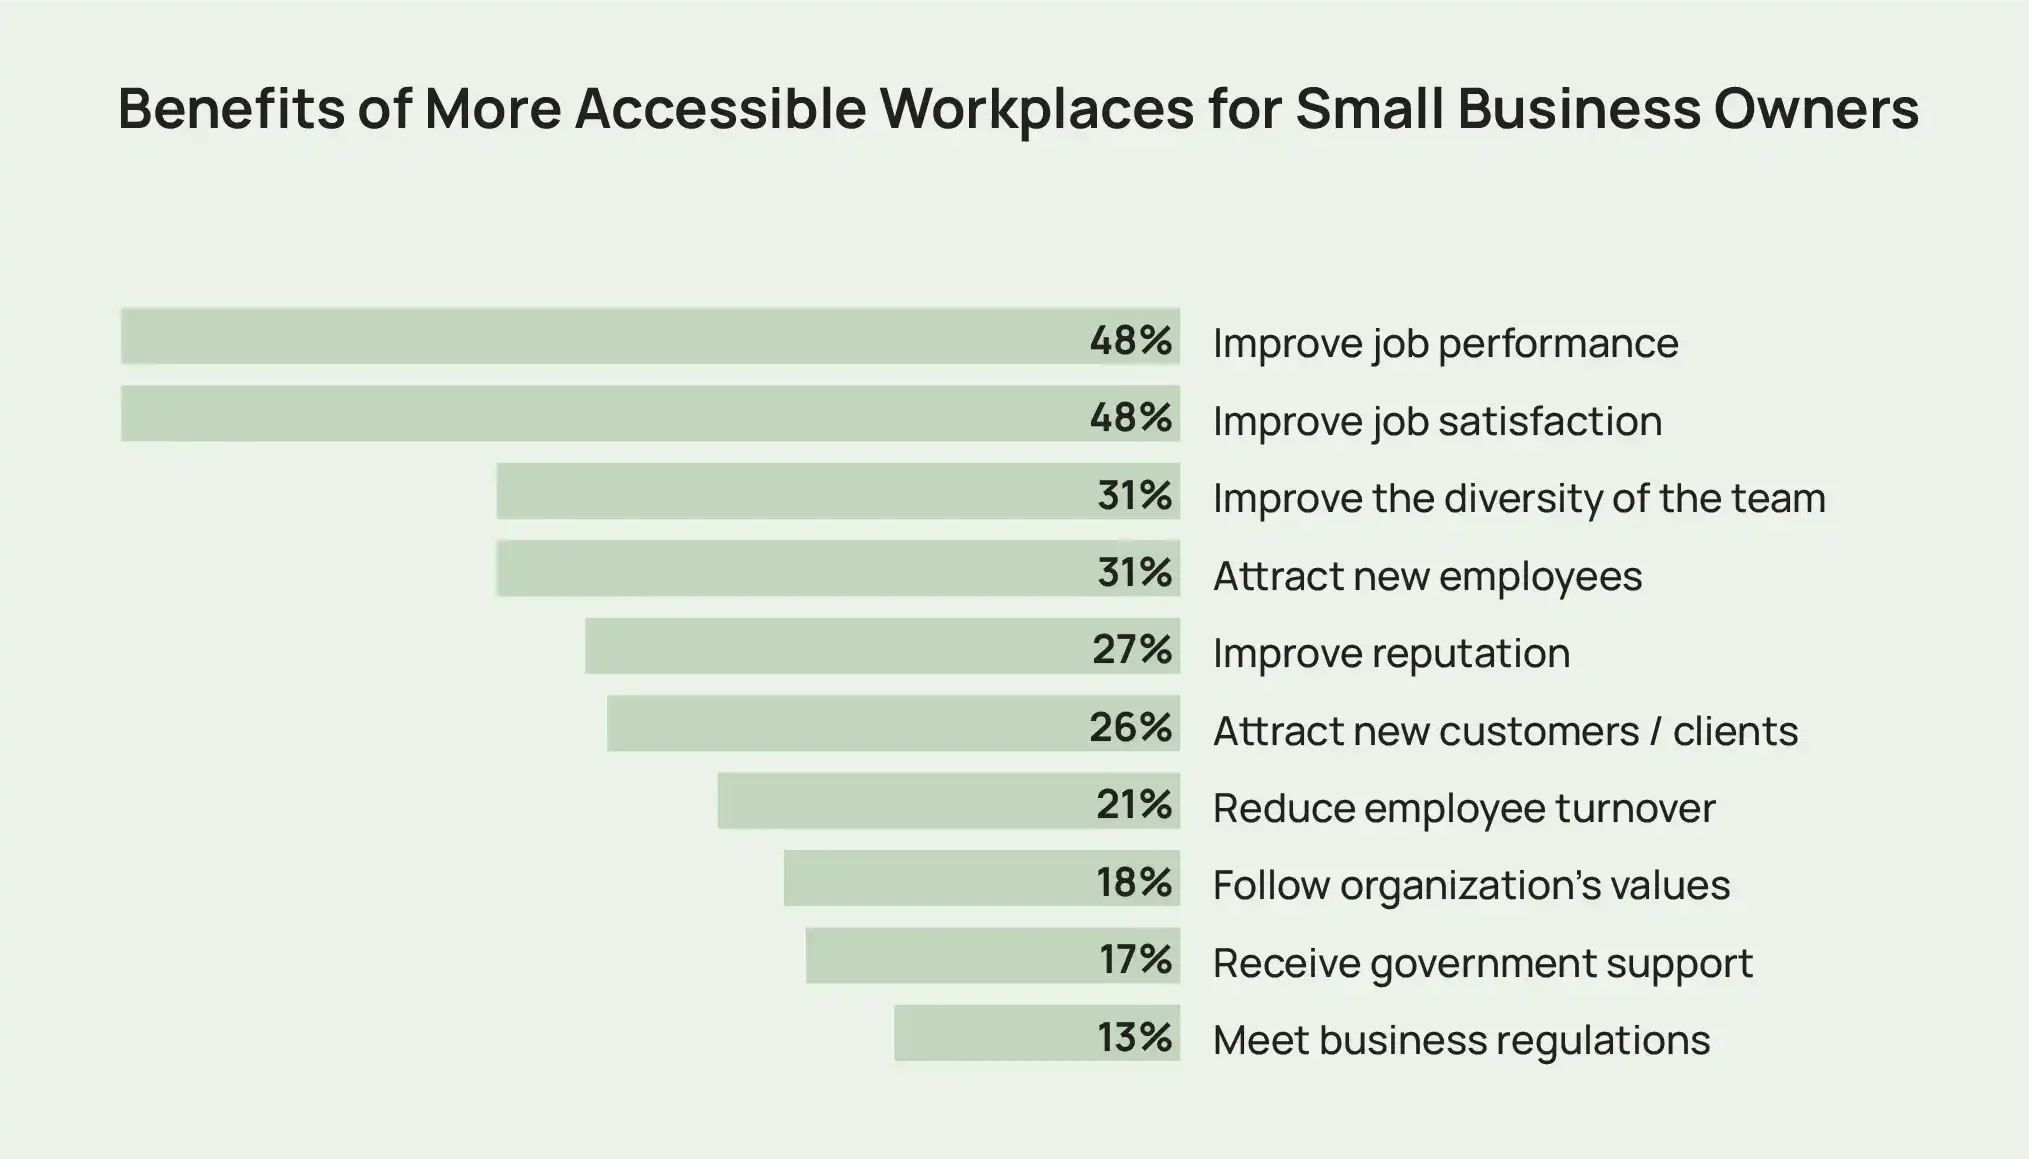 Un grafic cu bare care arată exemple de beneficii ale unor locuri de muncă mai accesibile pentru proprietarii de întreprinderi mici, inclusiv performanță și satisfacție la locul de muncă îmbunătățite.